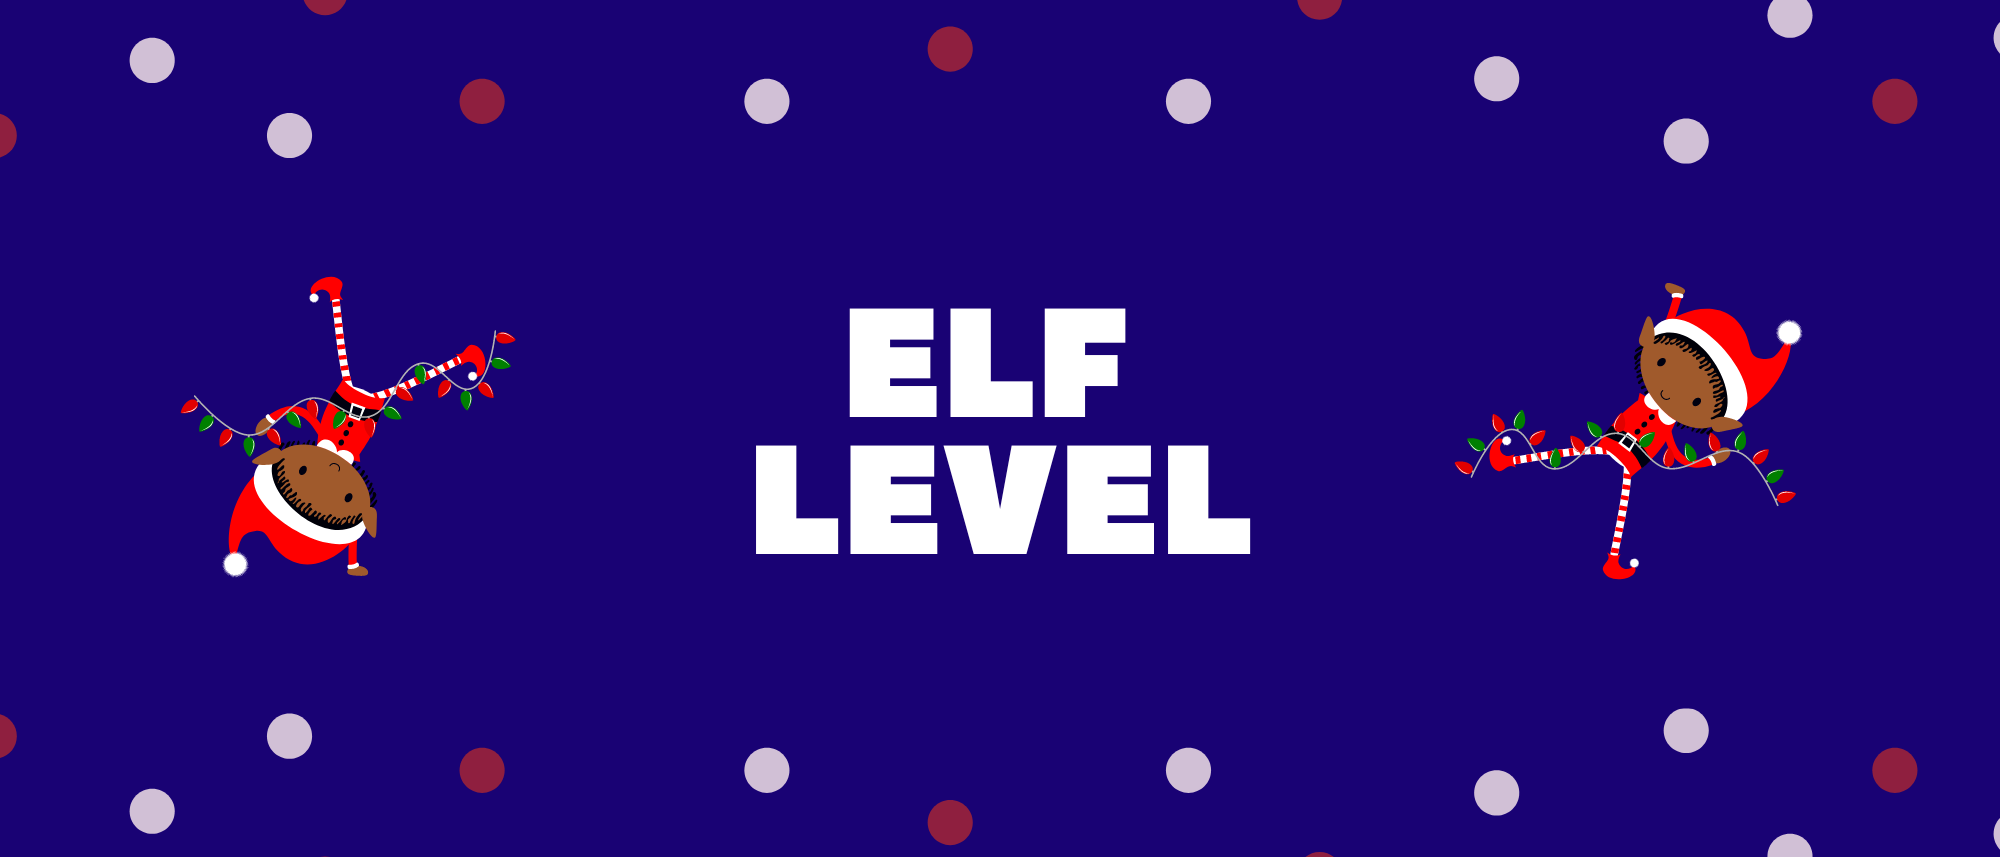 UTCT - Elf Level